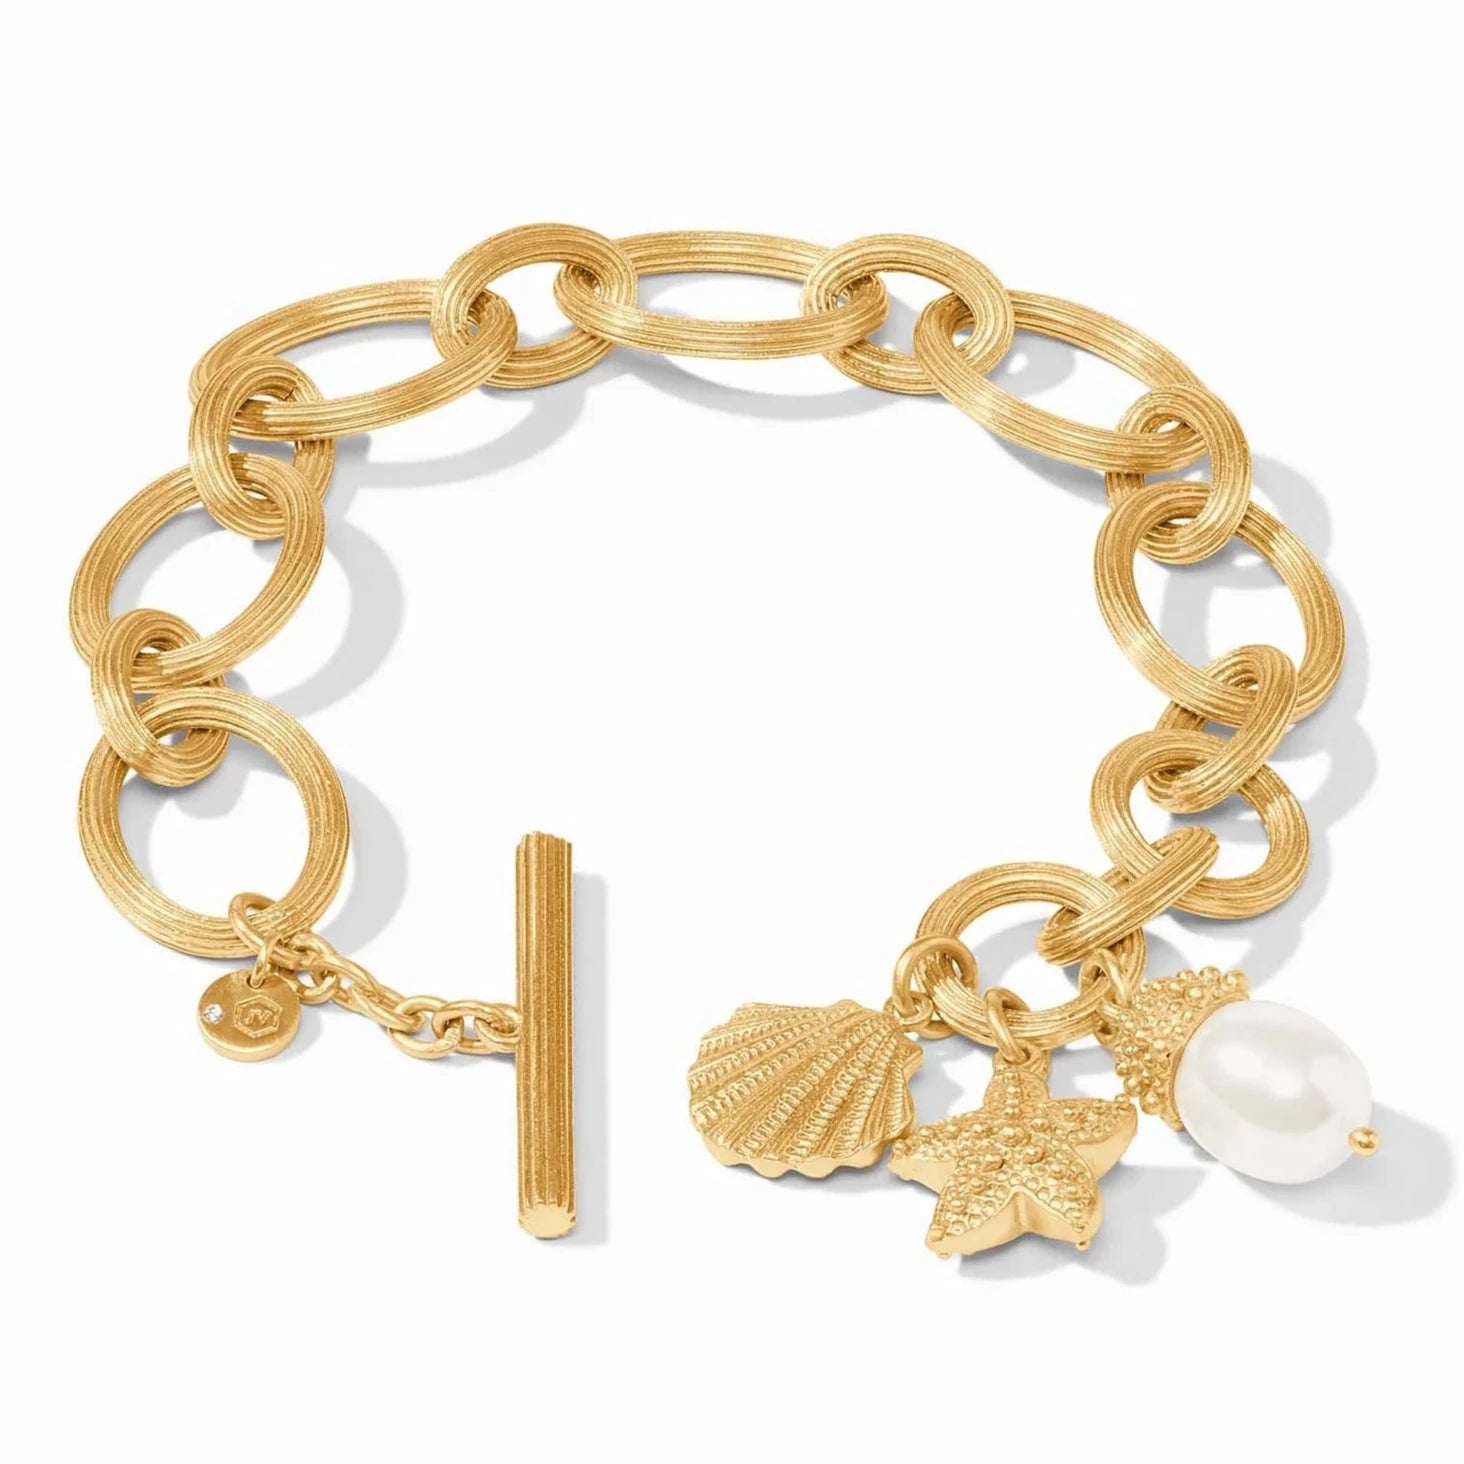 Julie Vos 24K Gold Plated Sanibel Charm Link Bracelet with Shell Pearl